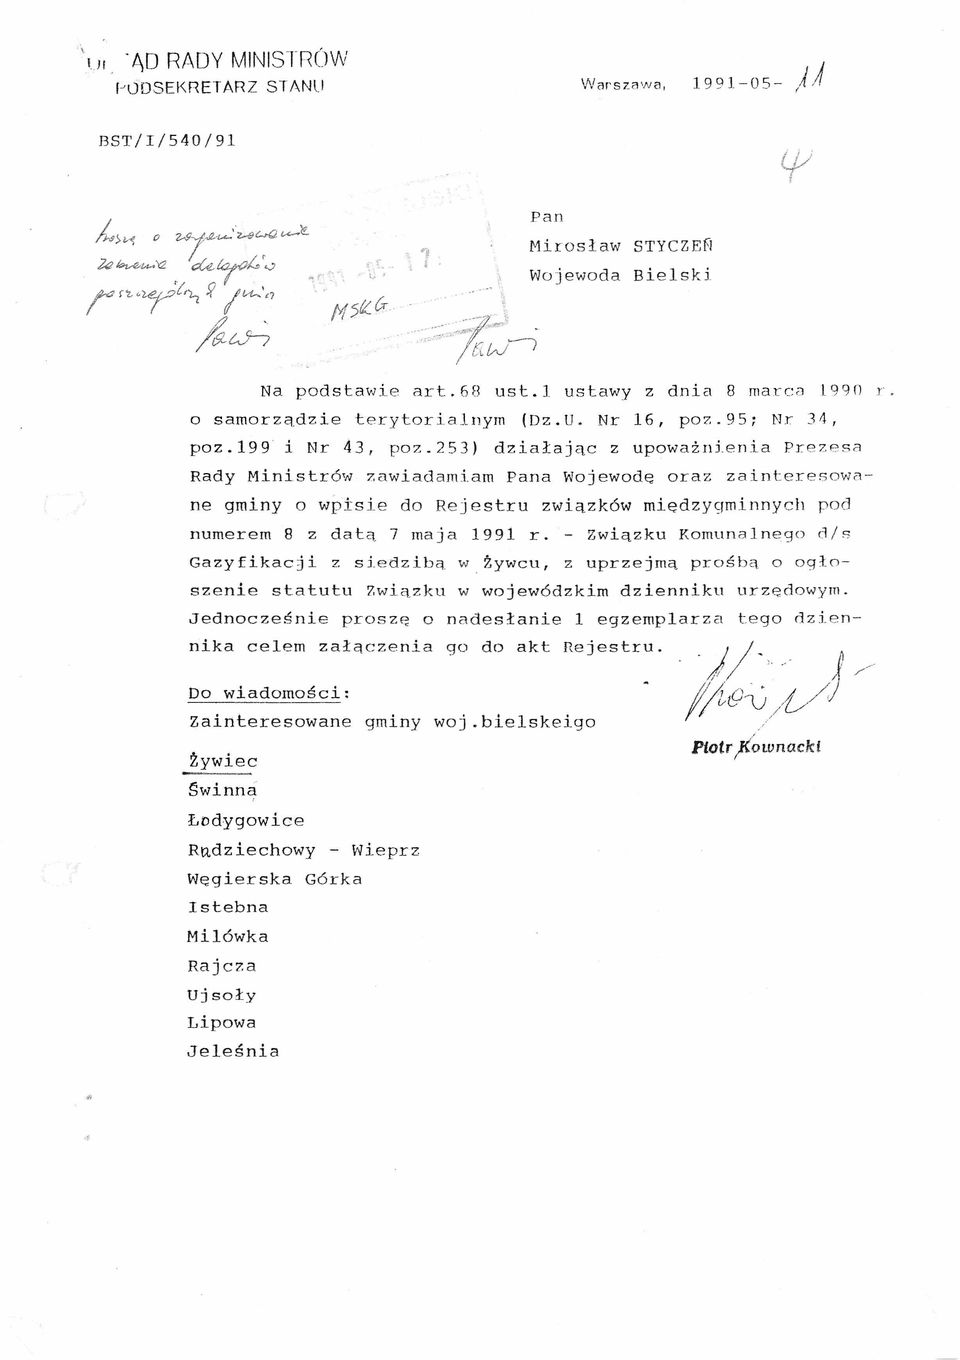 enia Prezesa Rady Ministrów zawiadamiam Pana Wojewodę oraz zainteresowane gminy o wpisie do Rejestru związków między9minnych pod numerem 8 z datą 7 maja 1991 r.